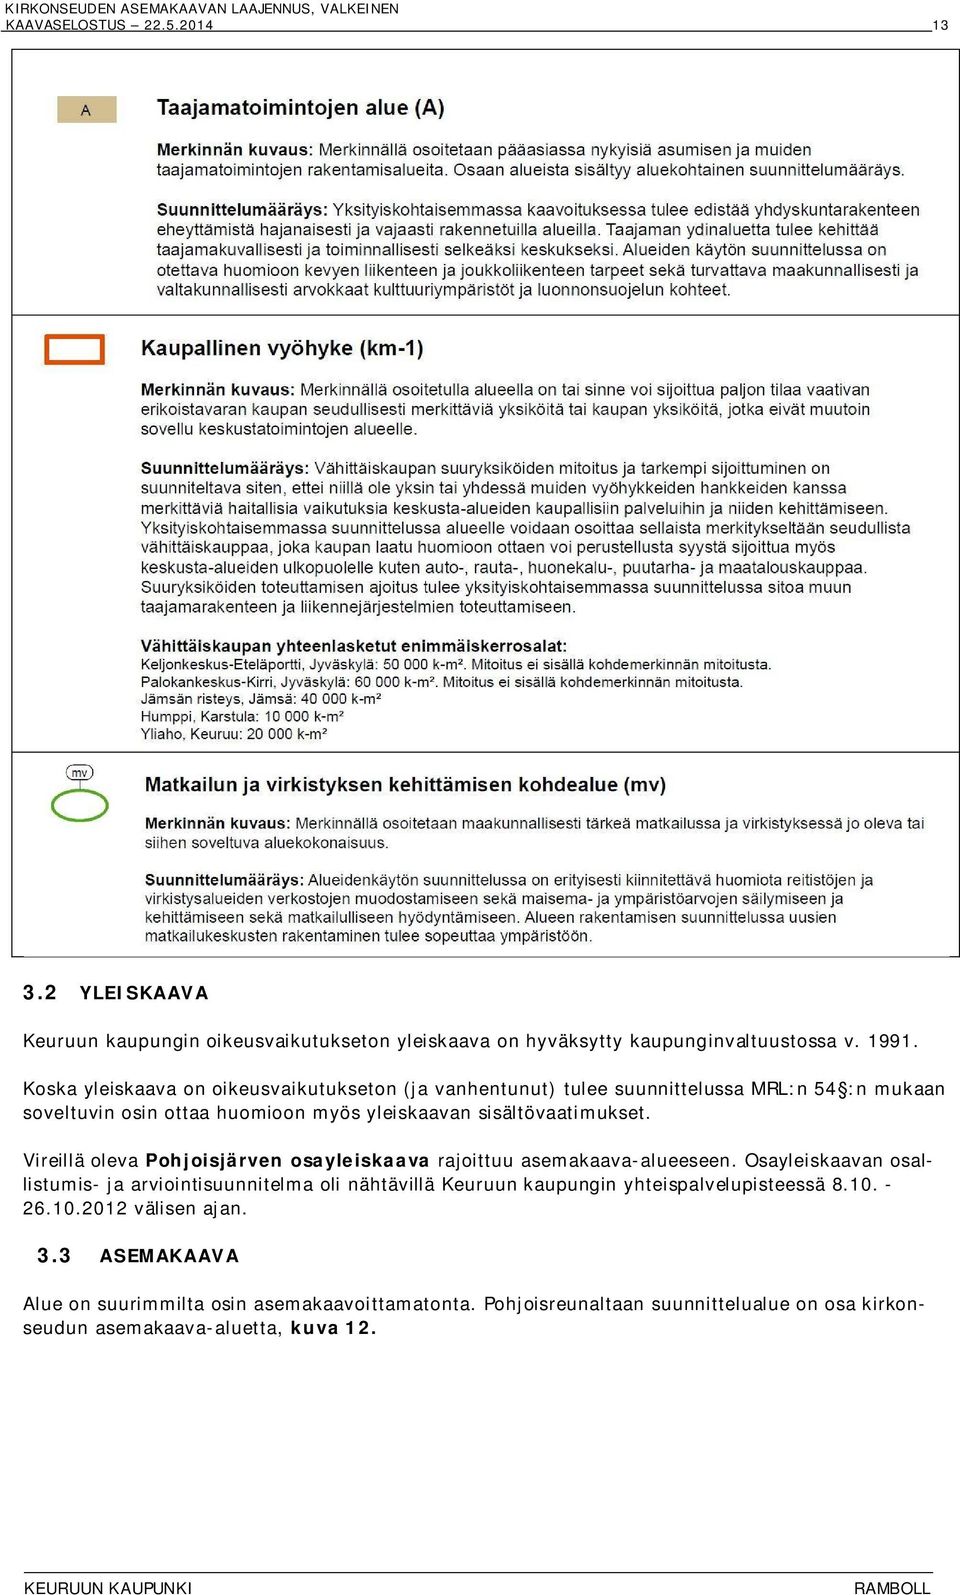 Vireillä oleva Pohjoisjärven osayleiskaava rajoittuu asemakaava-alueeseen.